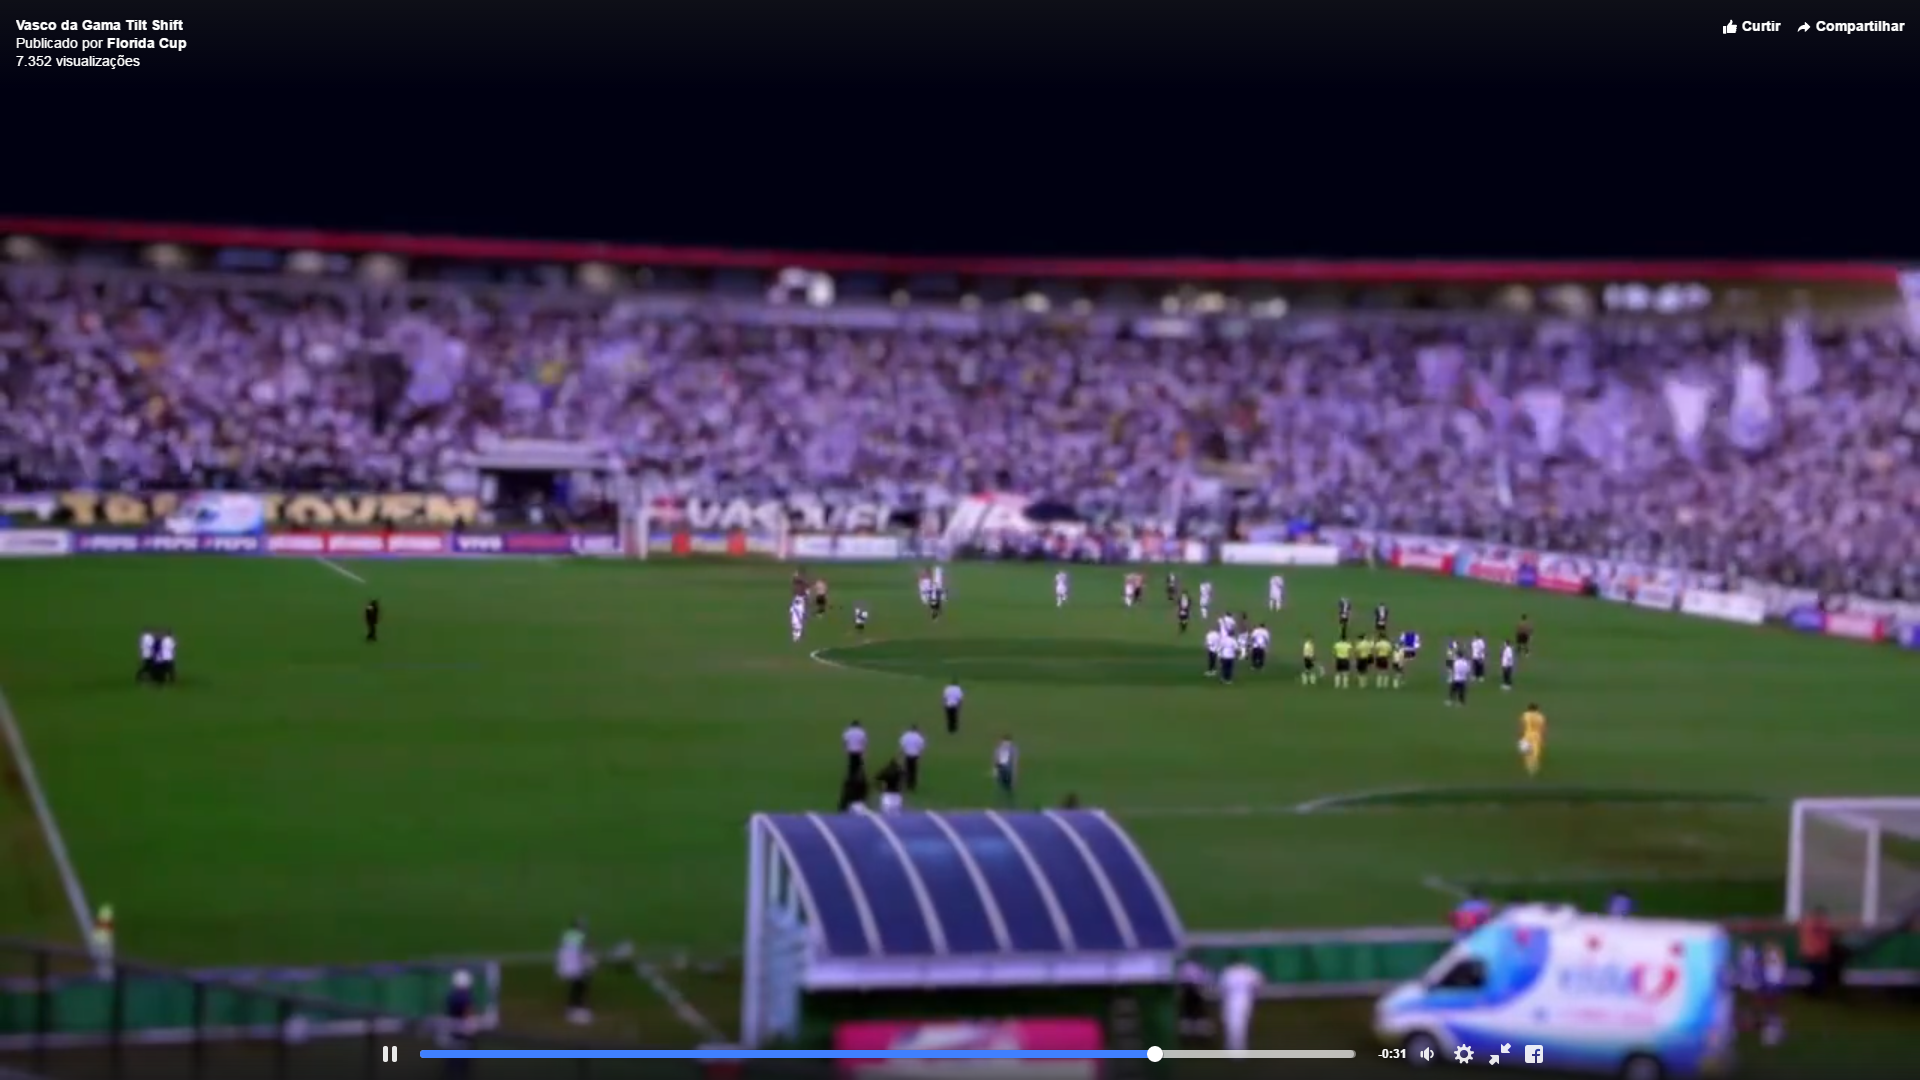 Facebook da Florida Cup posta vídeo da torcida vascaína durante jogo em São Januário